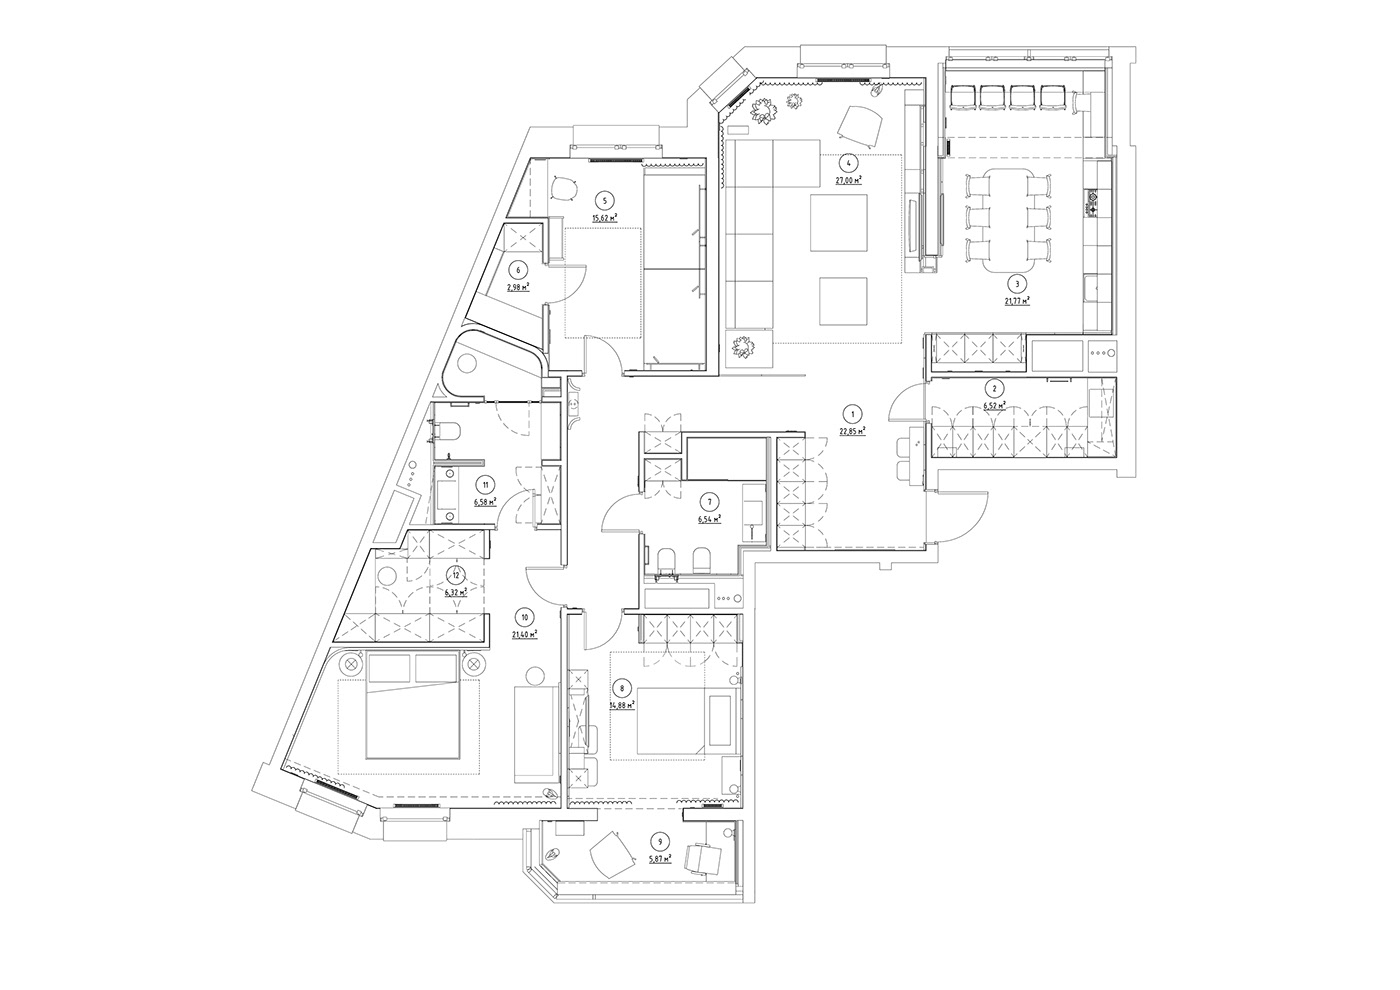 apartmentinterior architecture CG coronarenderer design interiordesign livingroom Render visualization